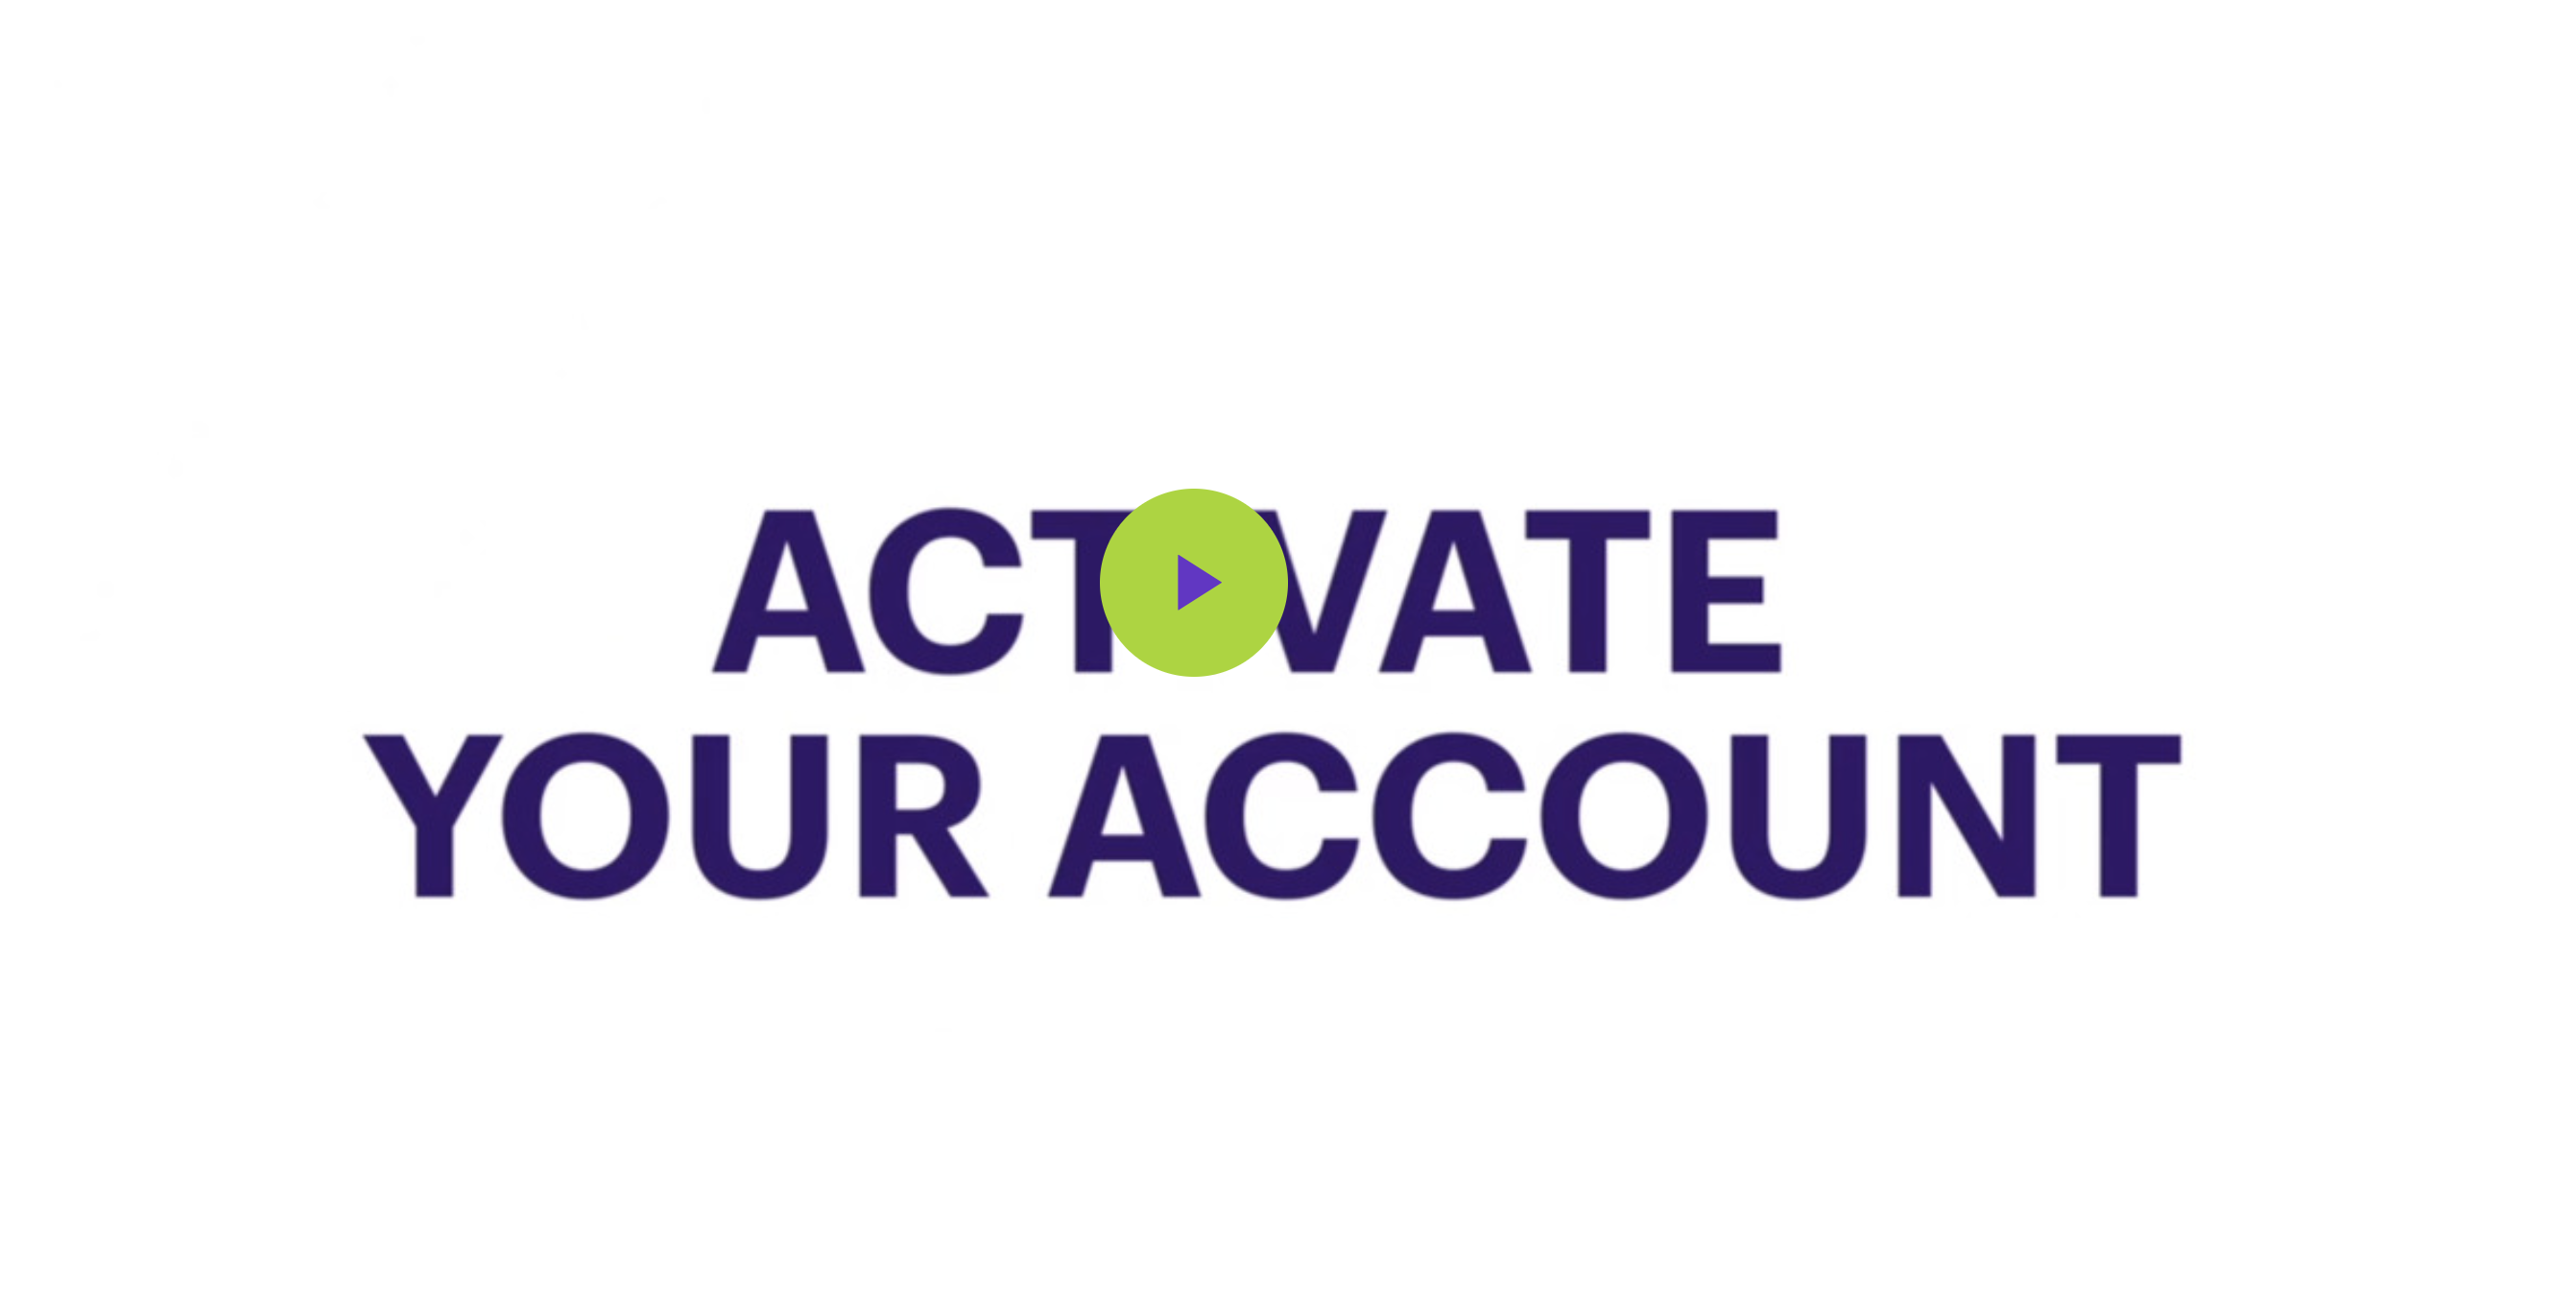 Account Activation